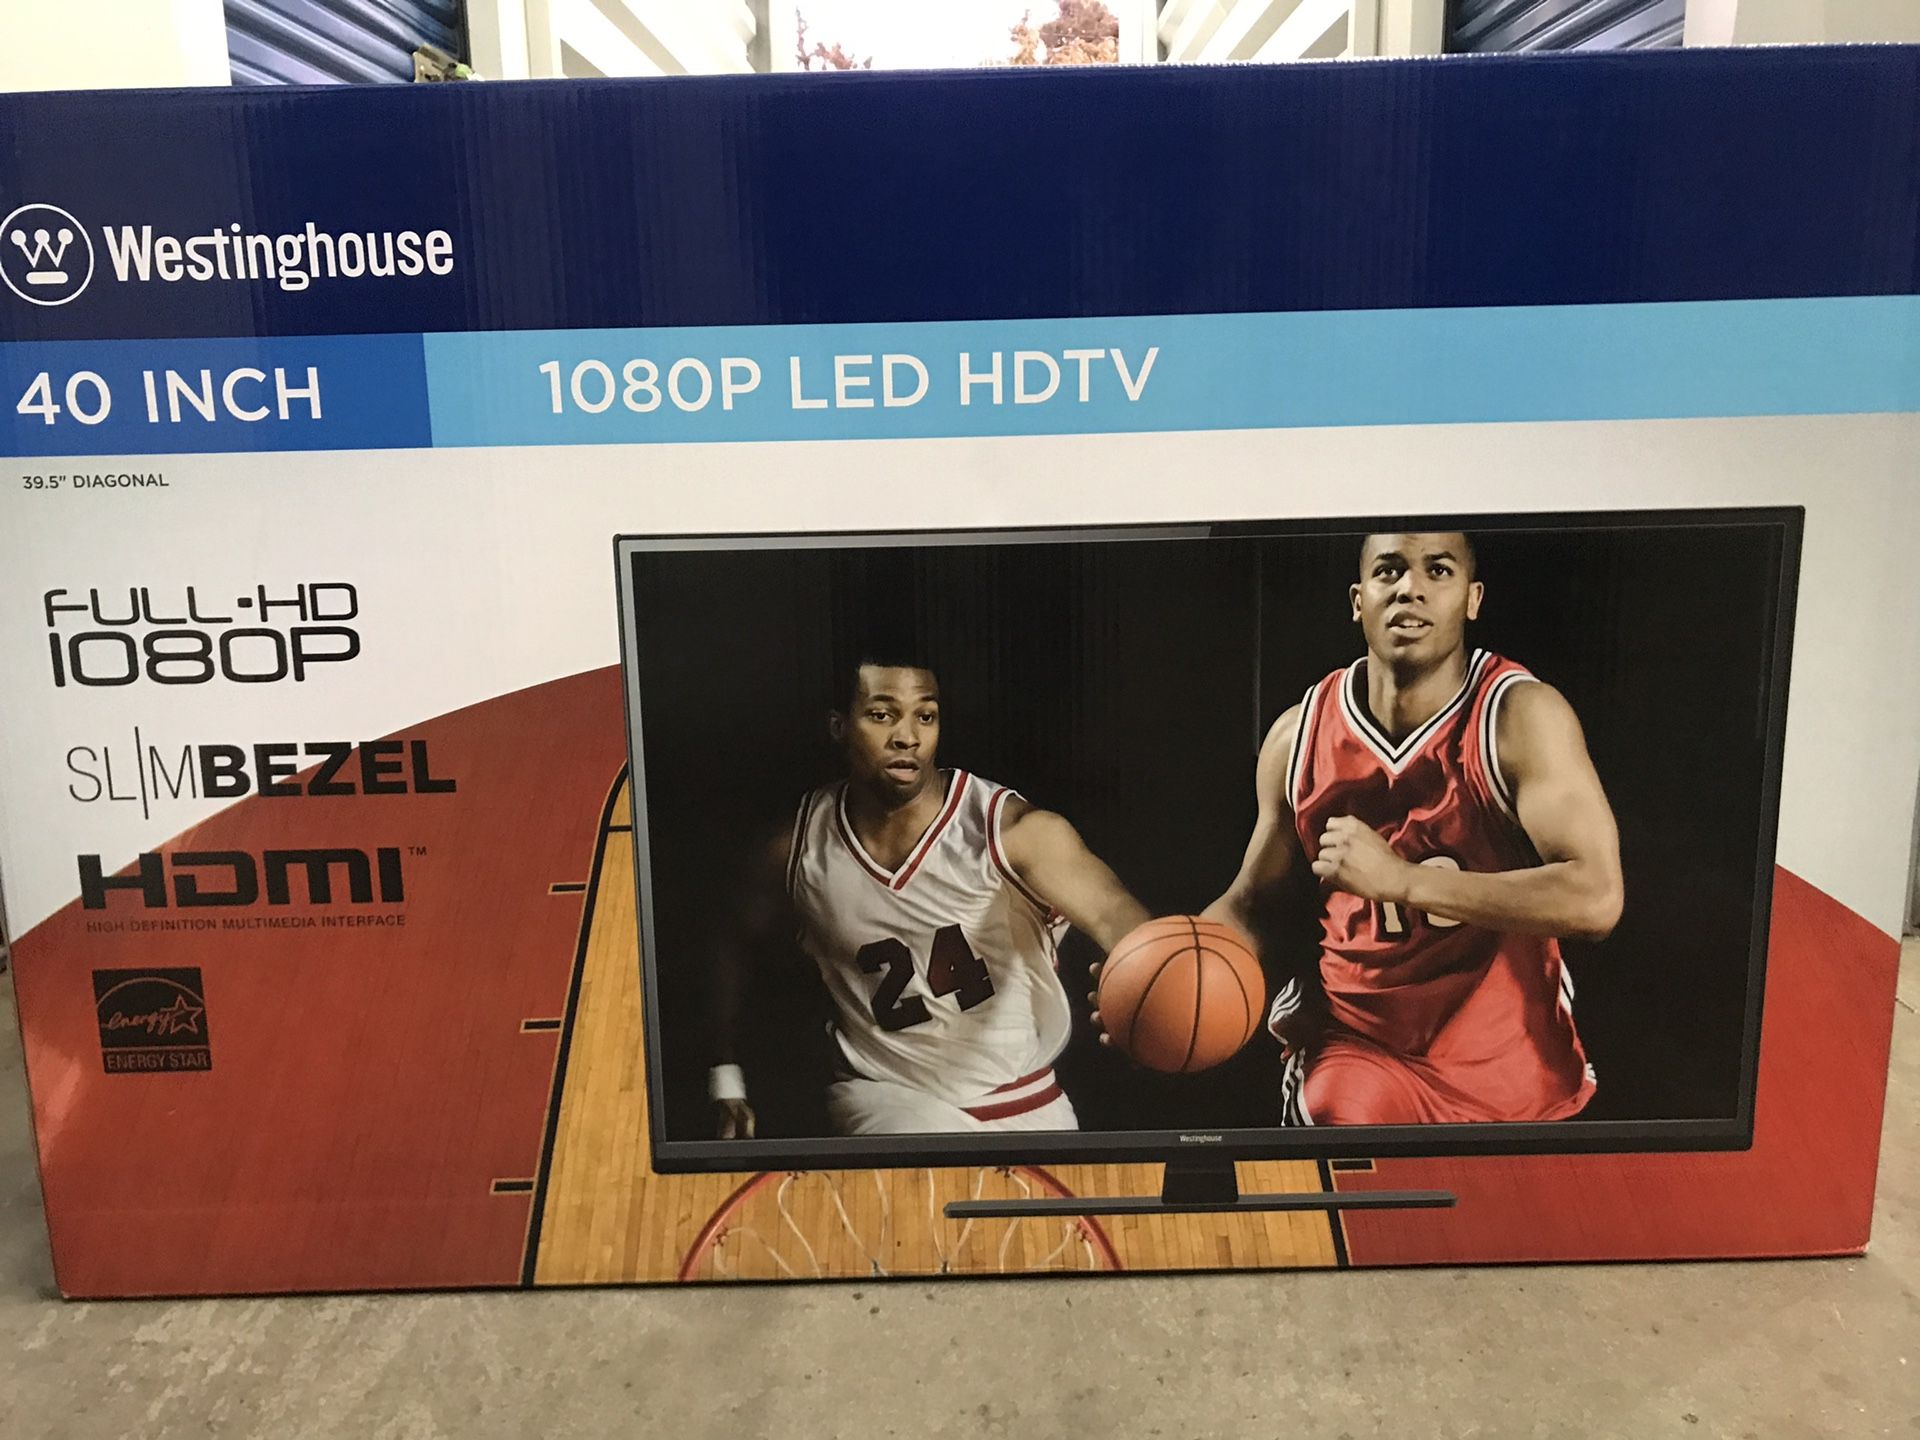 40 inch Westinghouse LED HDTV